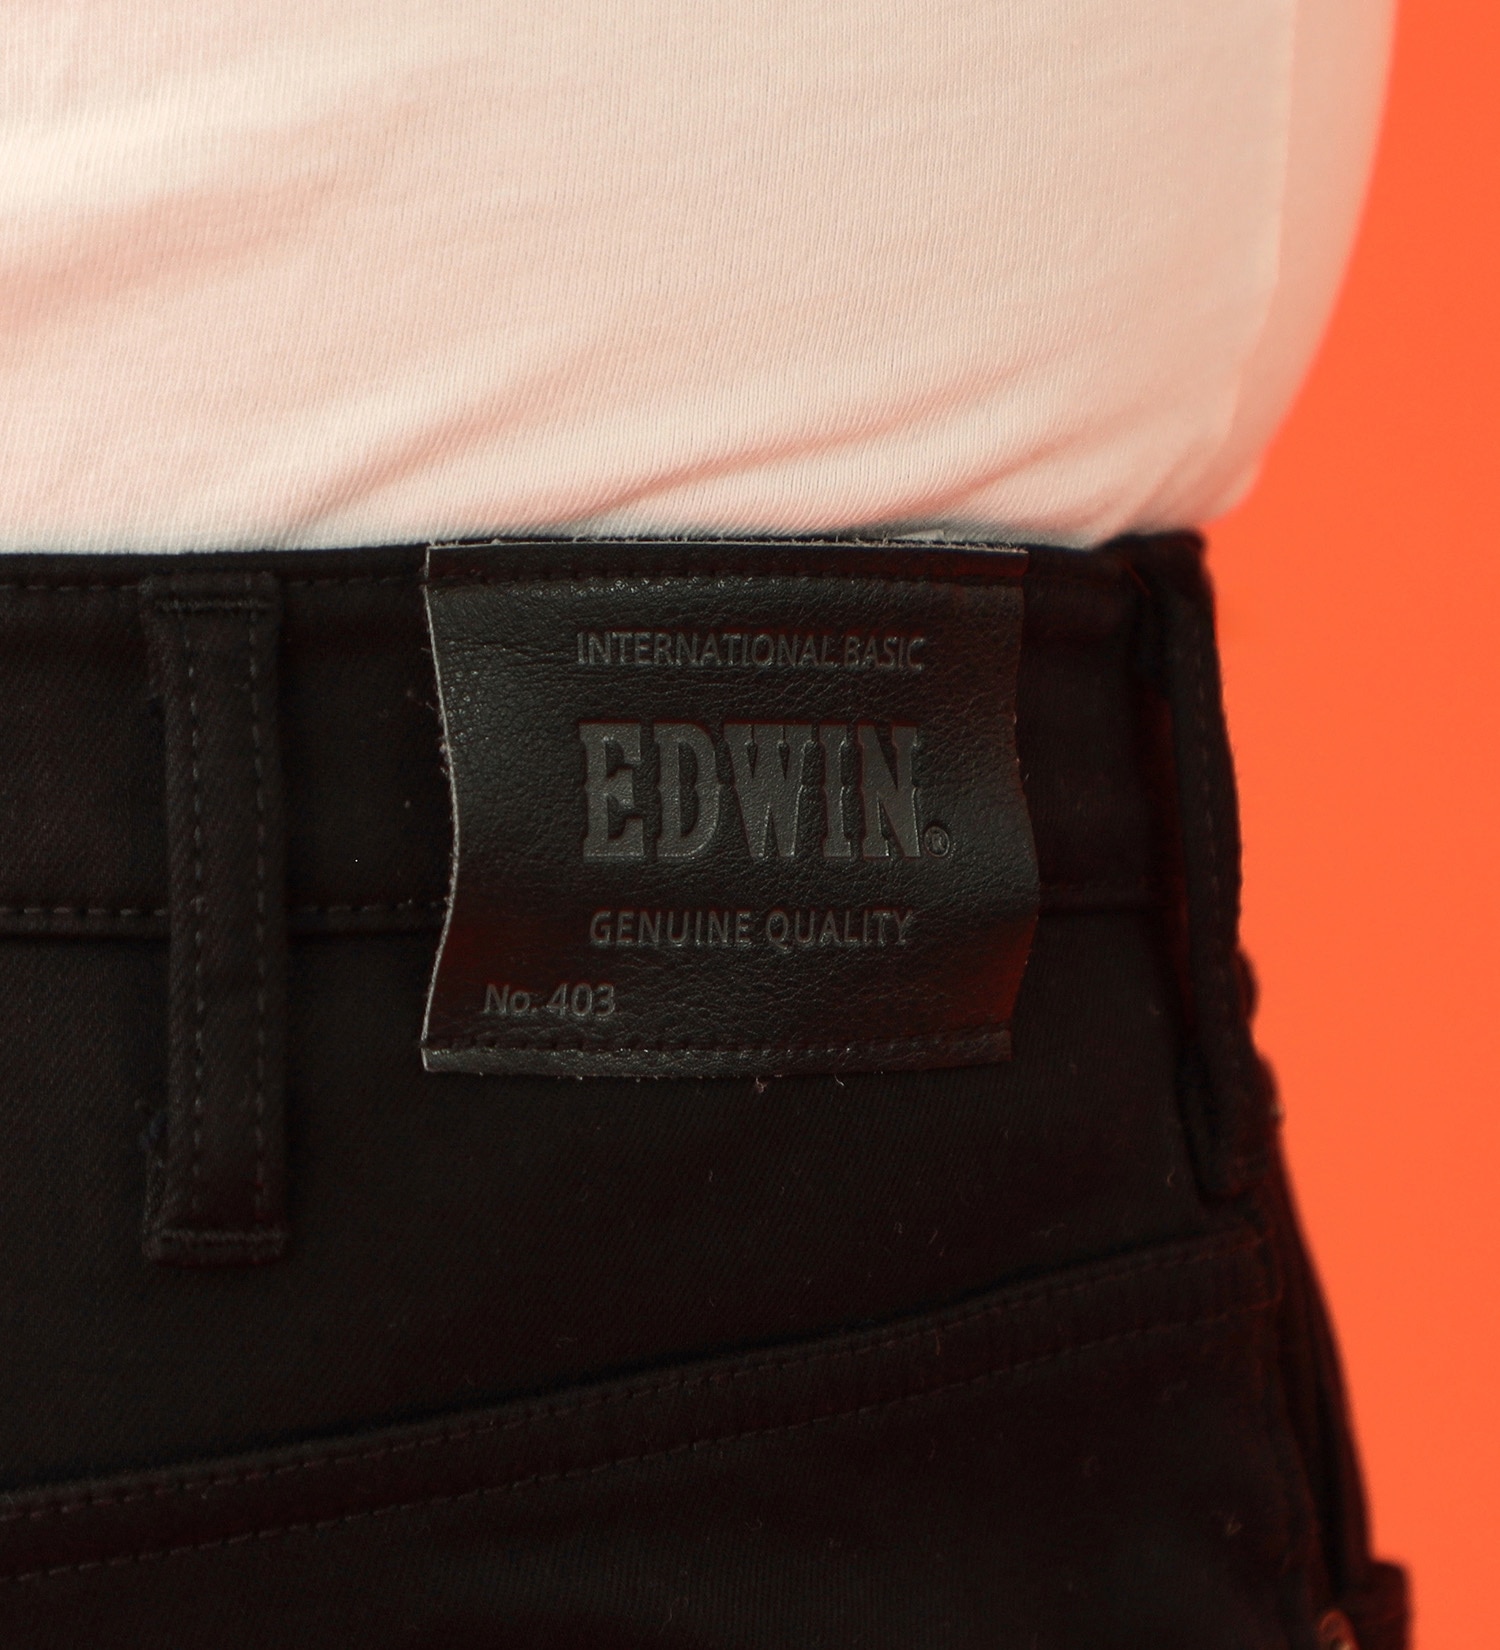 EDWIN(エドウイン)の【先行SALE】【大きいサイズ】2層で暖かい EDWIN インターナショナルベーシック レギュラーストレートパンツ403 WILD FIRE 2層ボンディング構造 【暖】|パンツ/パンツ/メンズ|ブラック